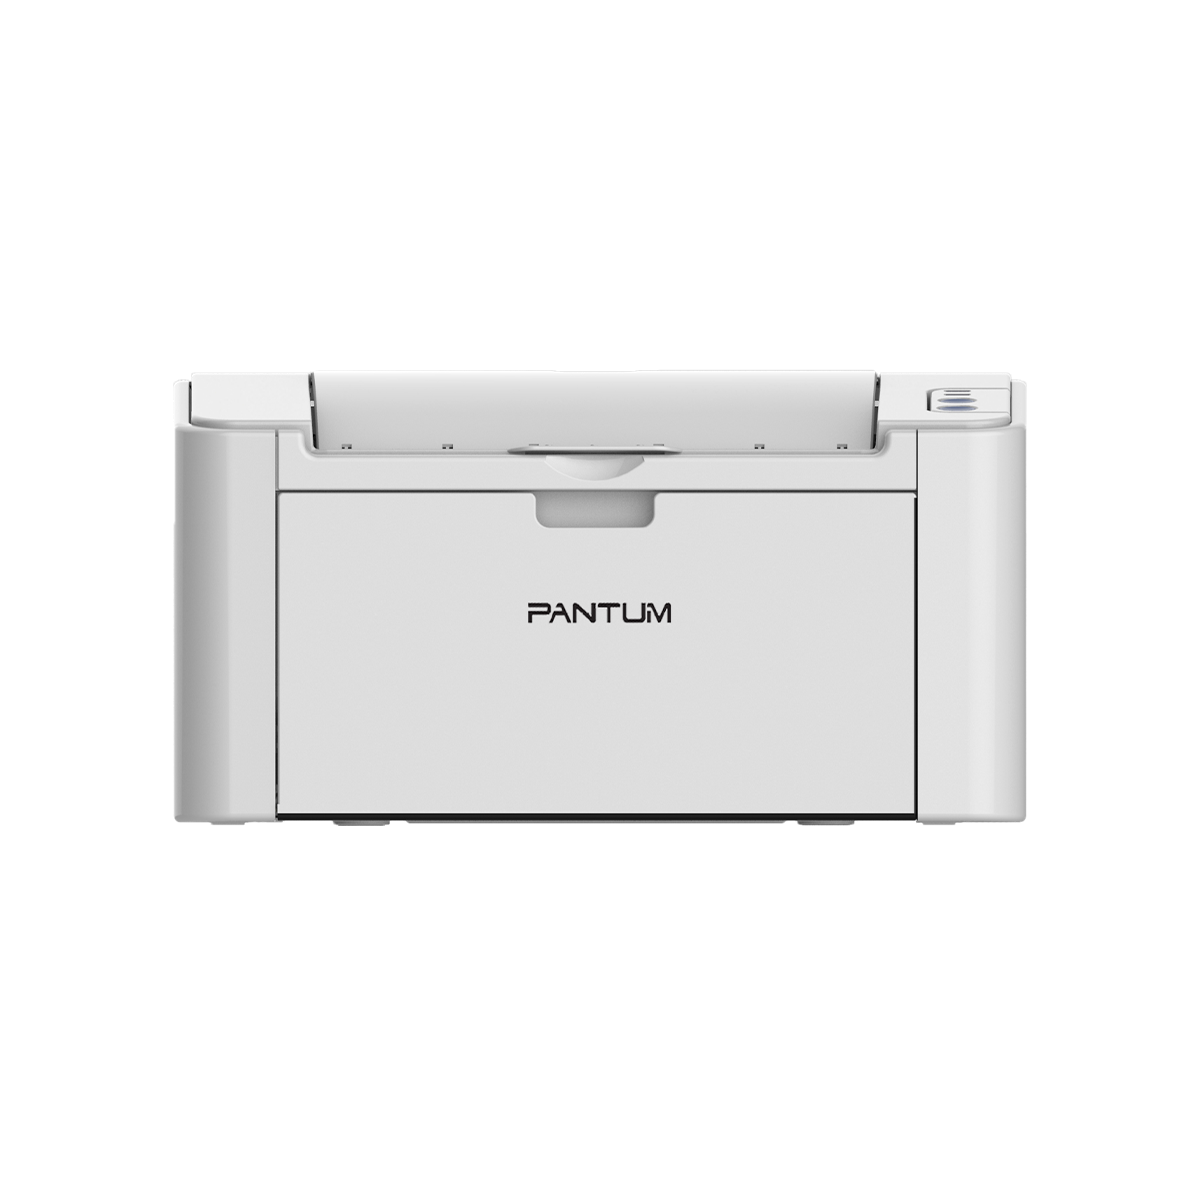 Принтер лазерный Pantum P2200, черно-белая печать, 20 стр/мин, 1200 x 1200 dpi, 128Мб RAM, USB